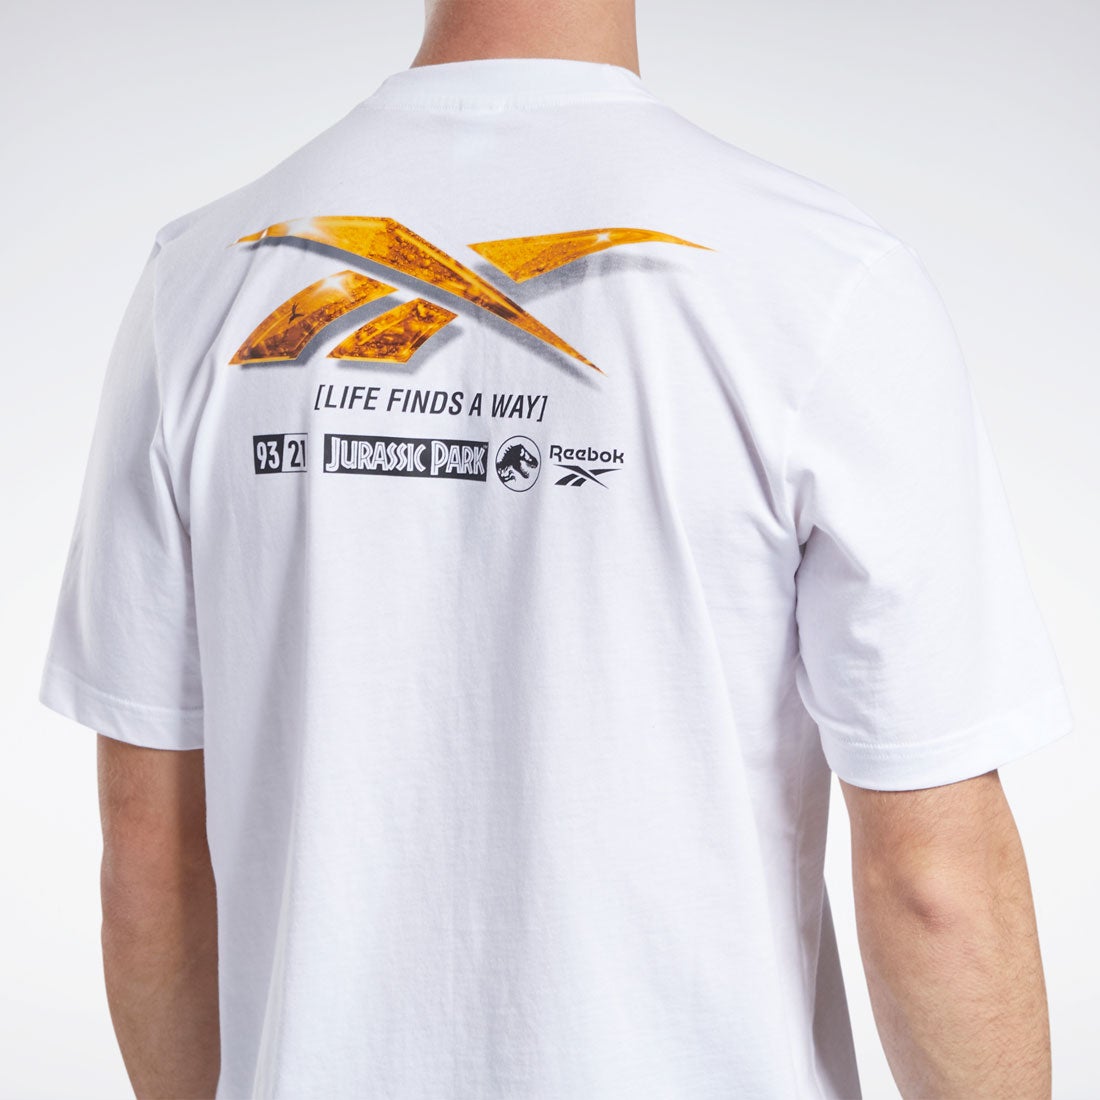 ジュラシック パーク アンバー Tシャツ / Jurassic Park Amber T-Shirt